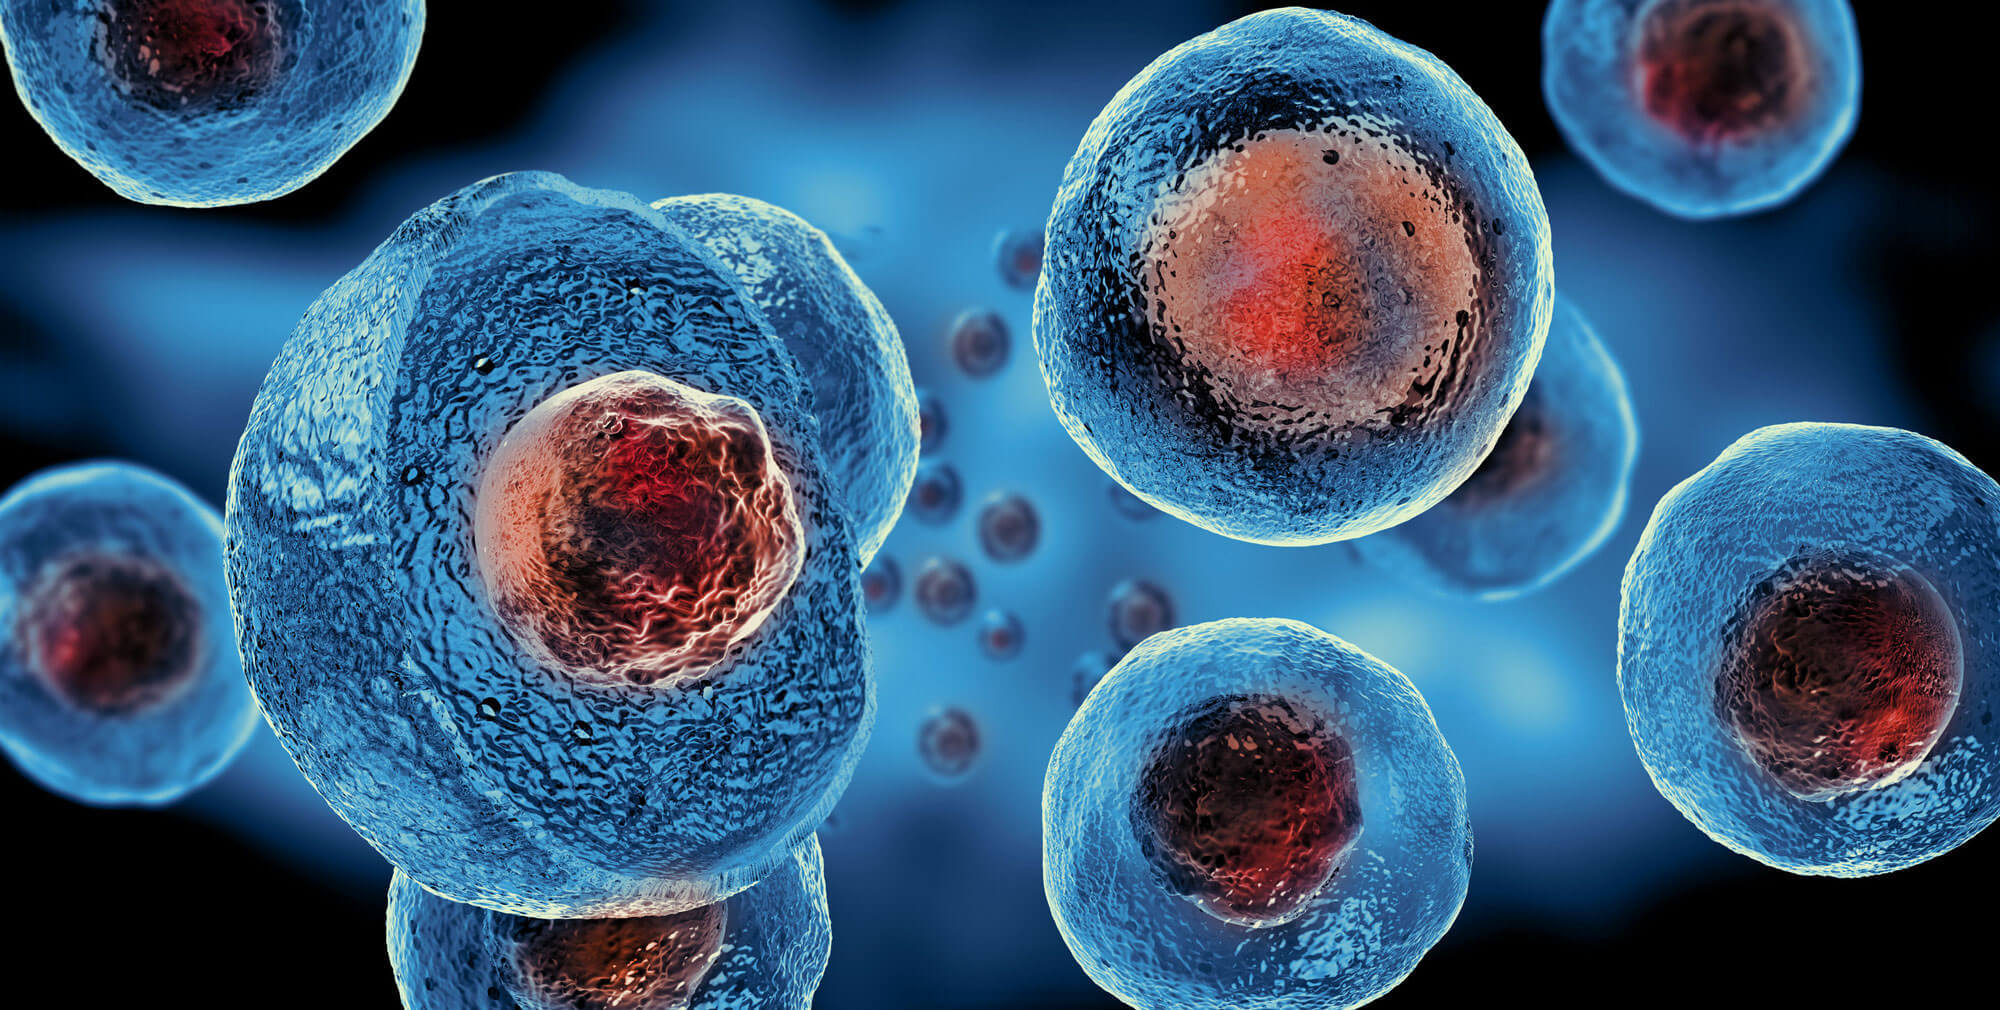 matične ćelije, medicina budućnosti | Trendovi u medicini, Zdravlje i prevencija, lečenje, magazin